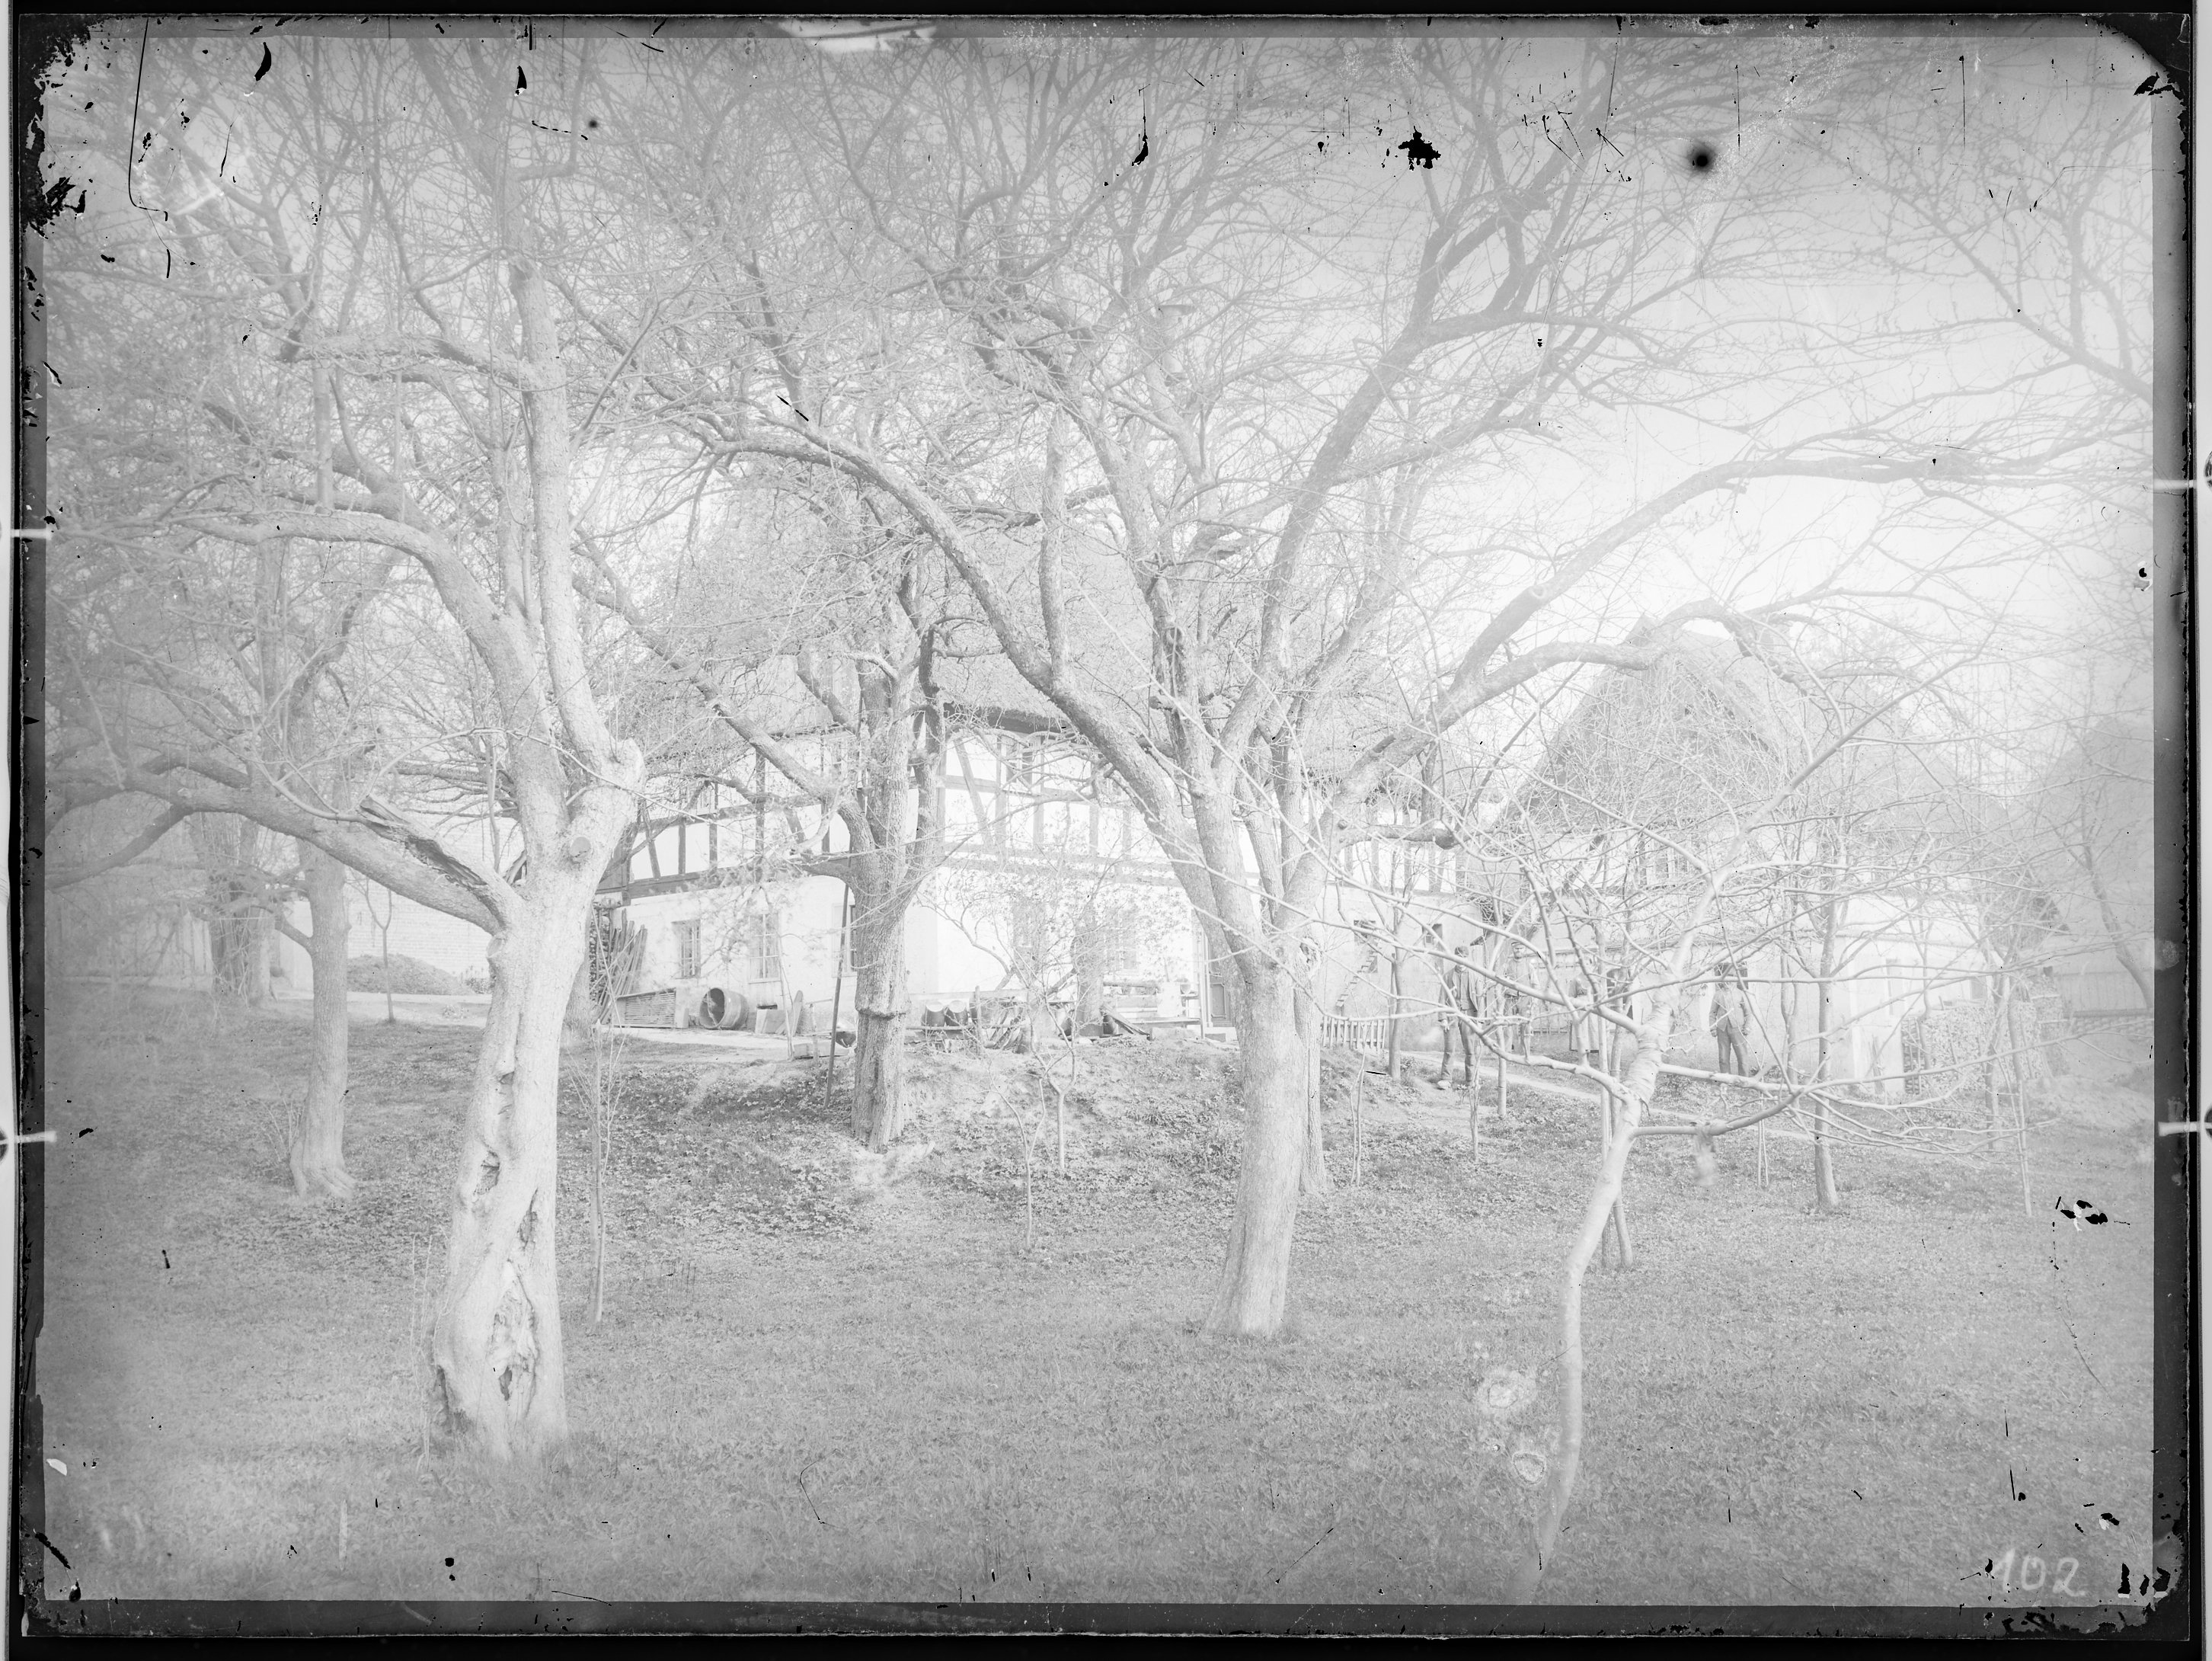 Fotografie: Wohngebäude und davor stehende Personen (Außenansicht), im Vordergrund Wiese mit Bäumen, um 1905? (Verkehrsmuseum Dresden CC BY-NC-SA)